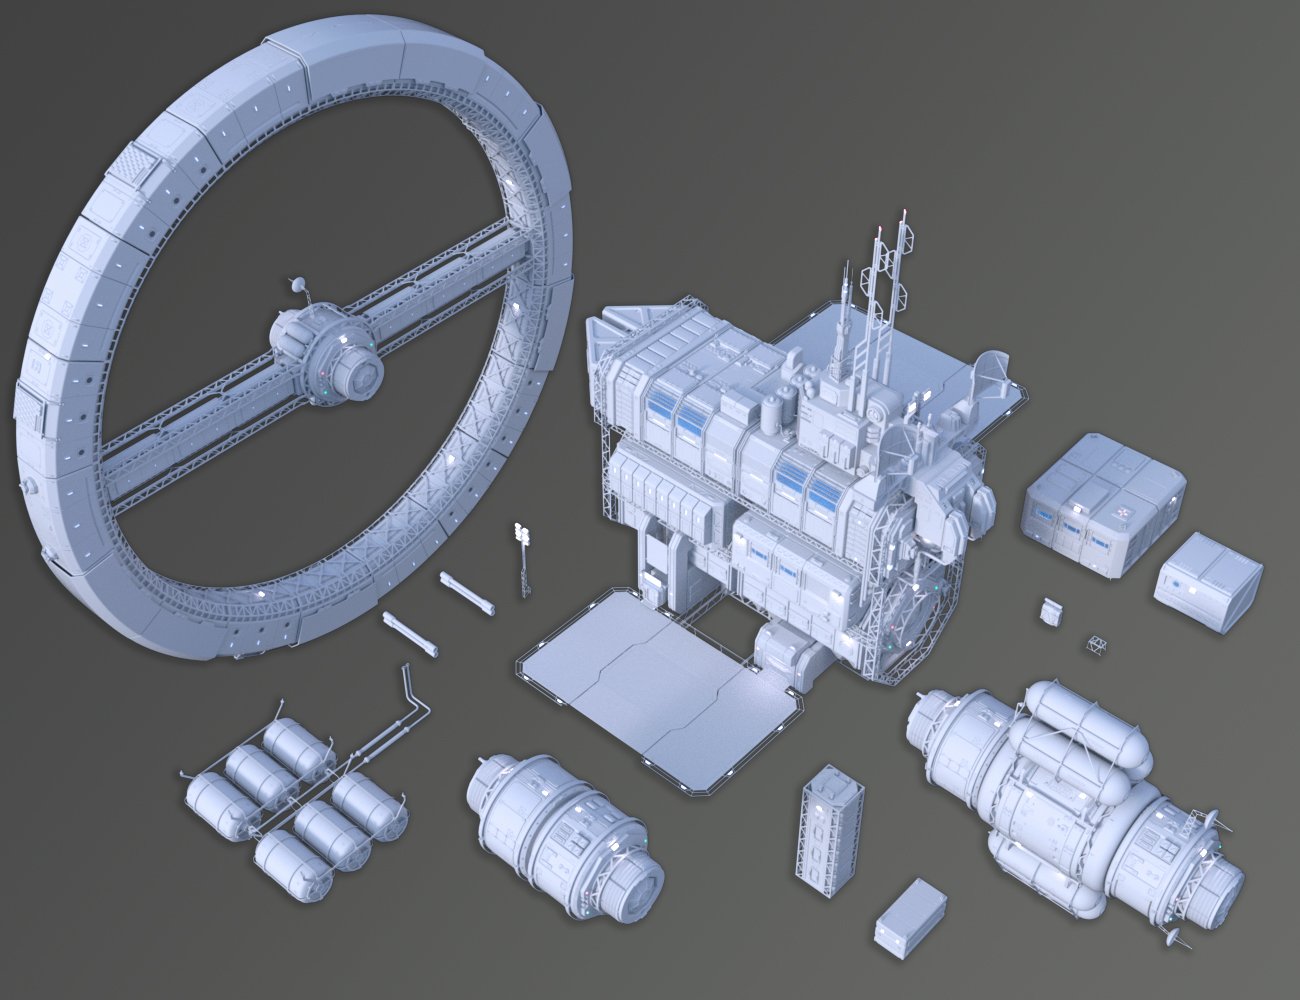 Solaris Station by: petipet, 3D Models by Daz 3D